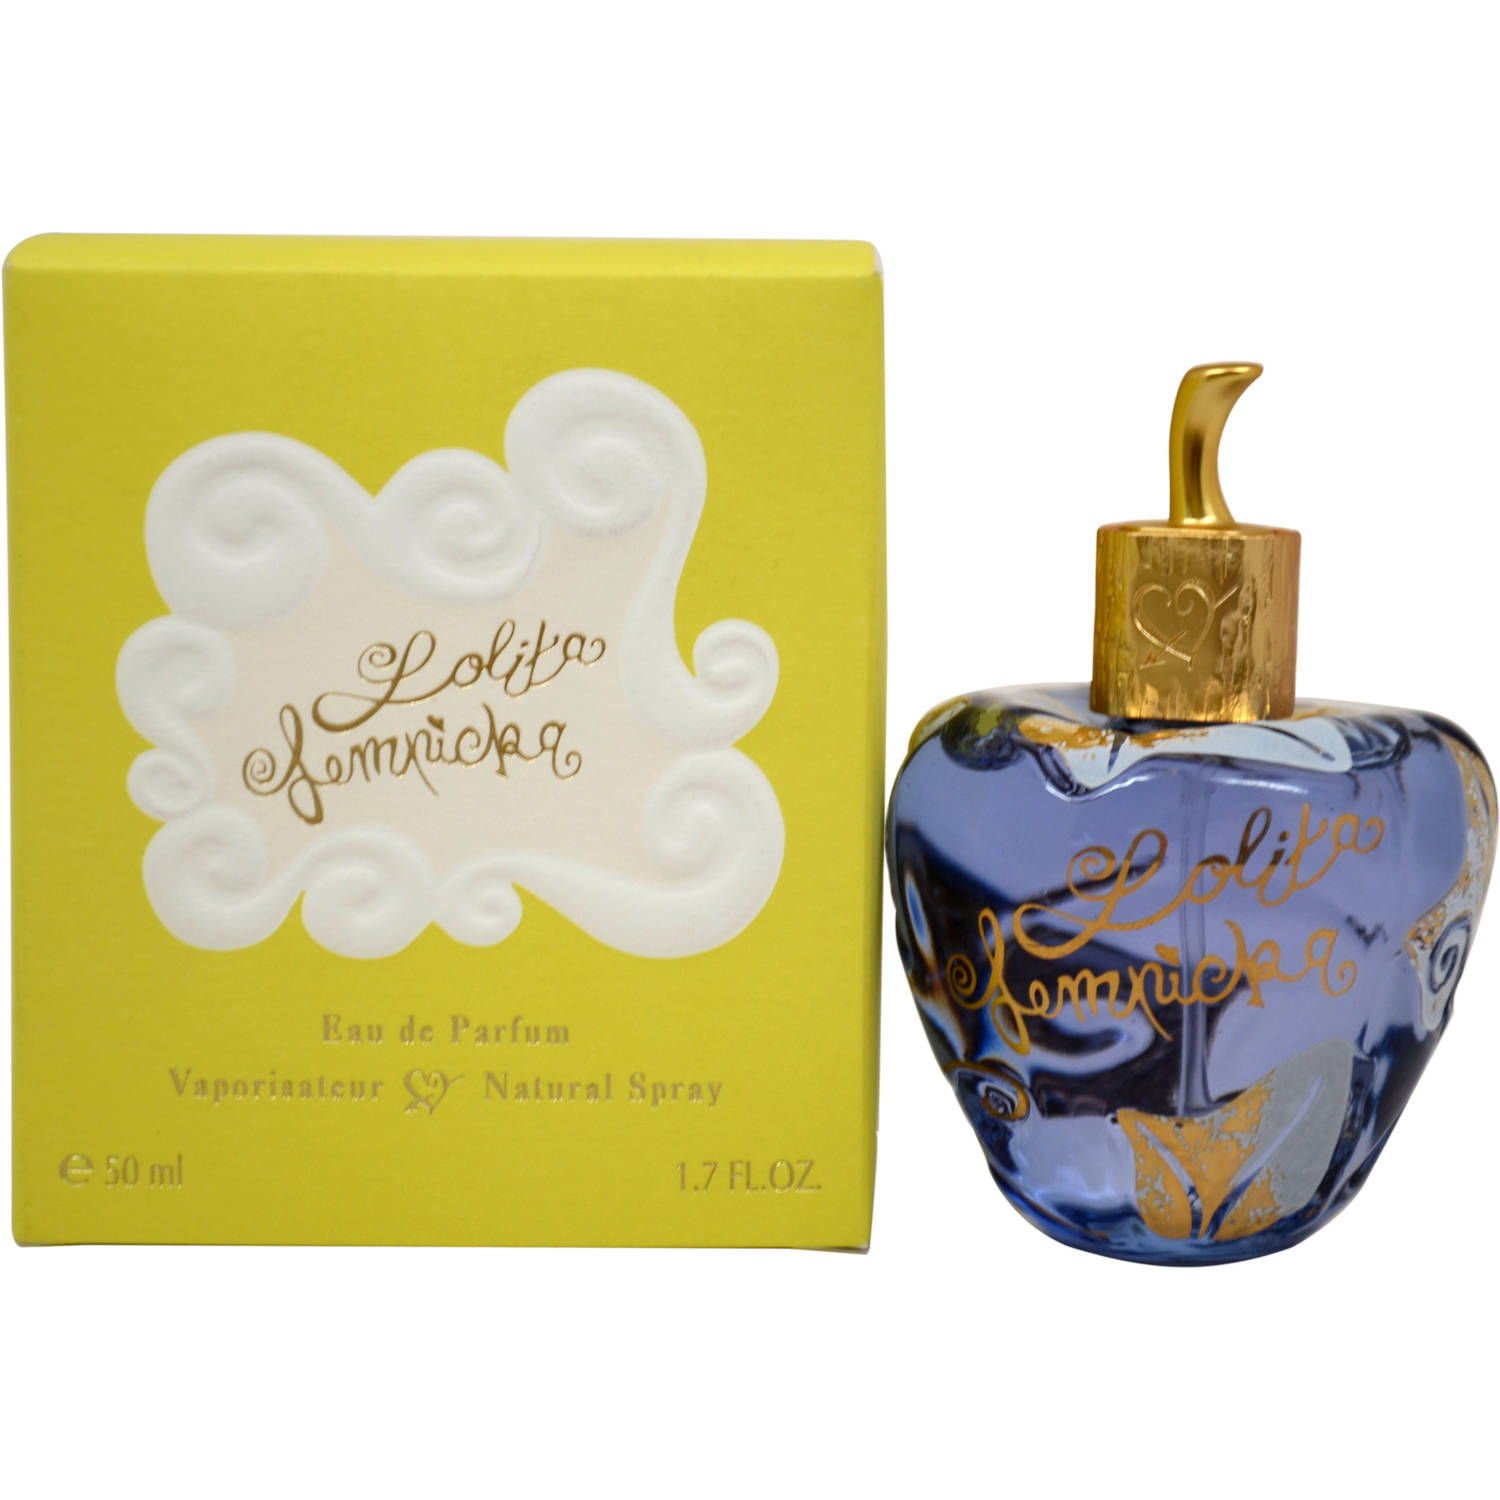 Lolita Lempicka, Eau de Parfum for Women, 1.7 fl oz - image 2 of 2